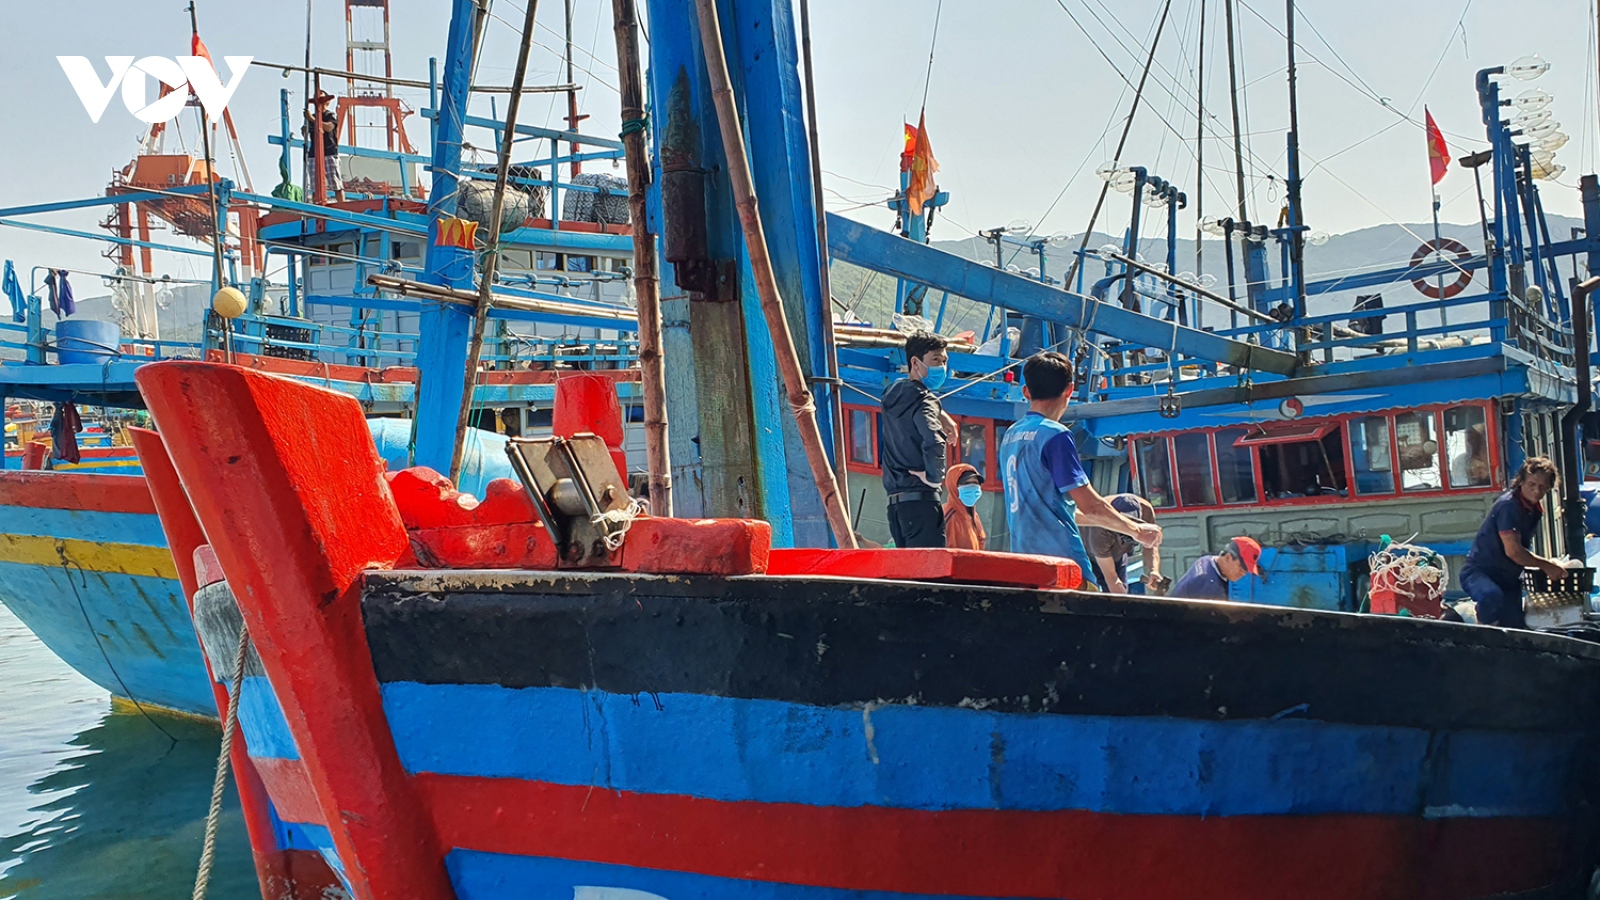 Ngư dân rơi xuống biển mất tích tại Bình Định